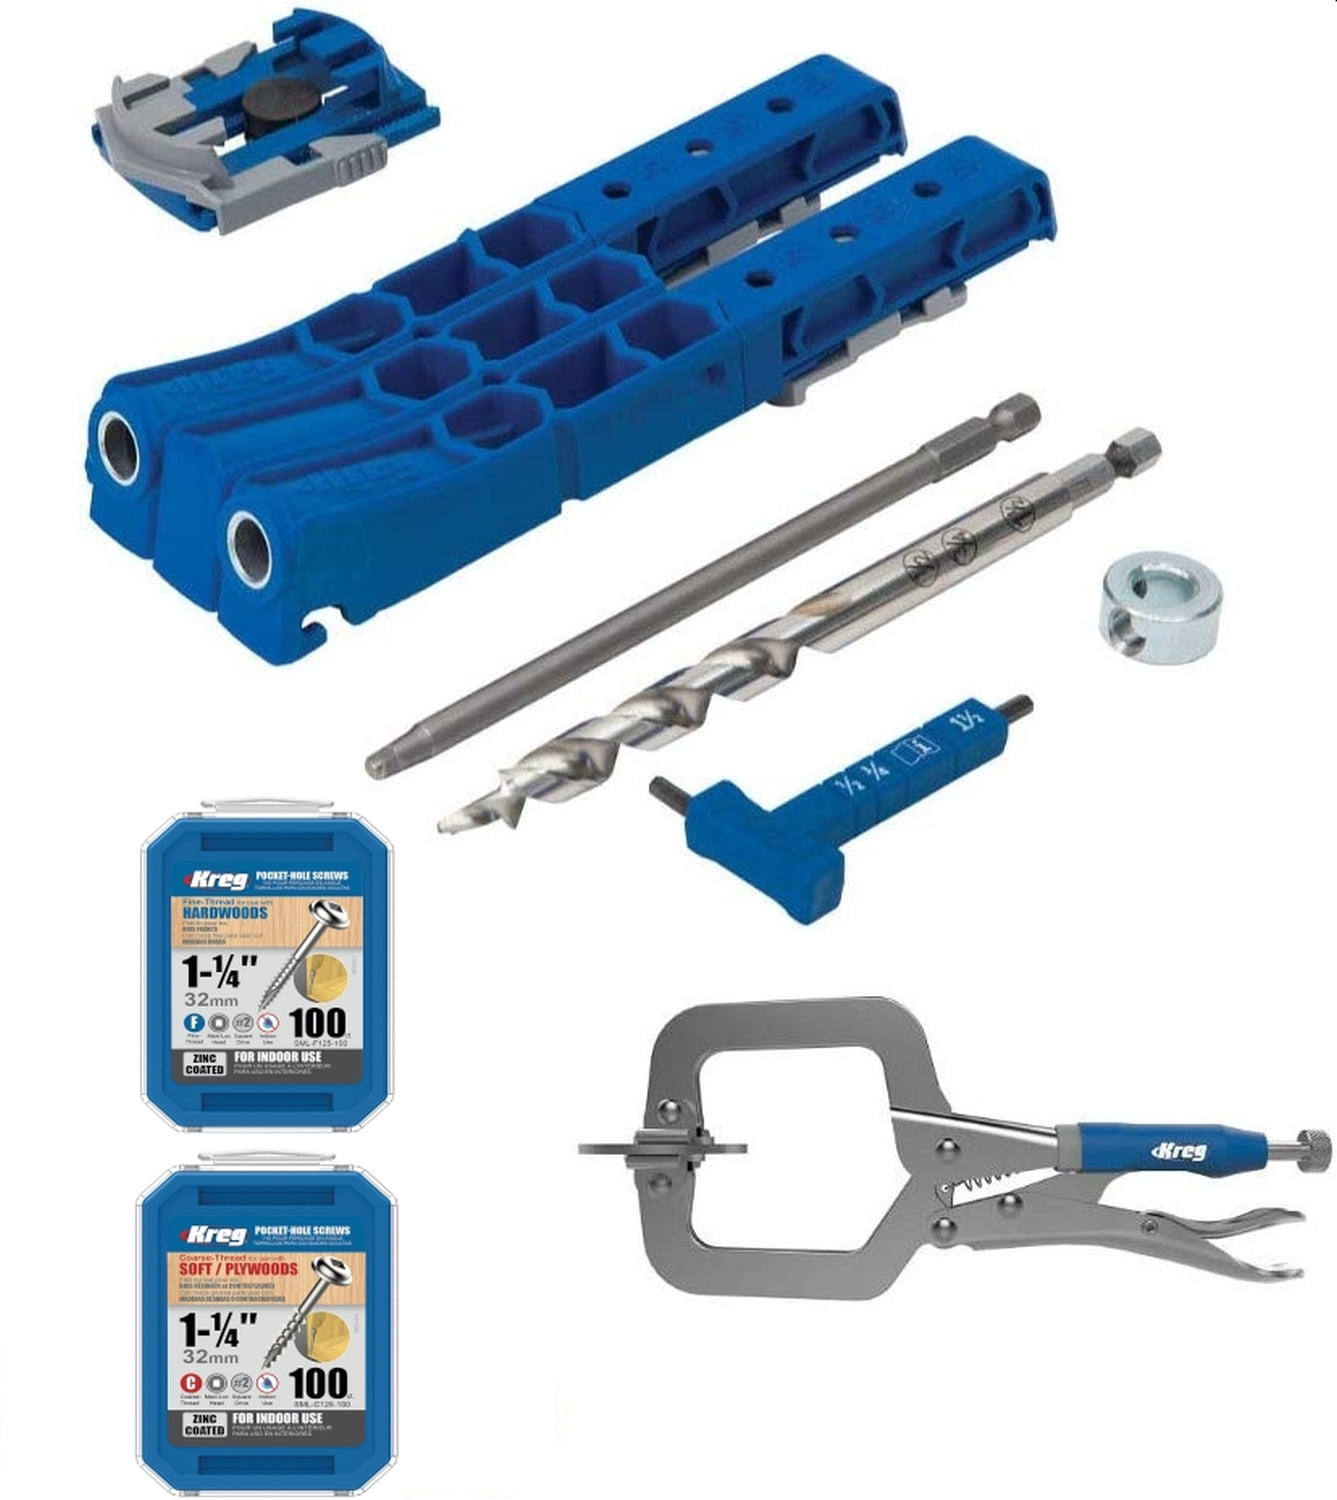 Kreg R3 Jr. Pocket-Hole Jig System - Portable Kreg Pocket-Hole Jig - Easy Clamping & Adjusting - Includes Positioning Sliders - for Materials 1/2